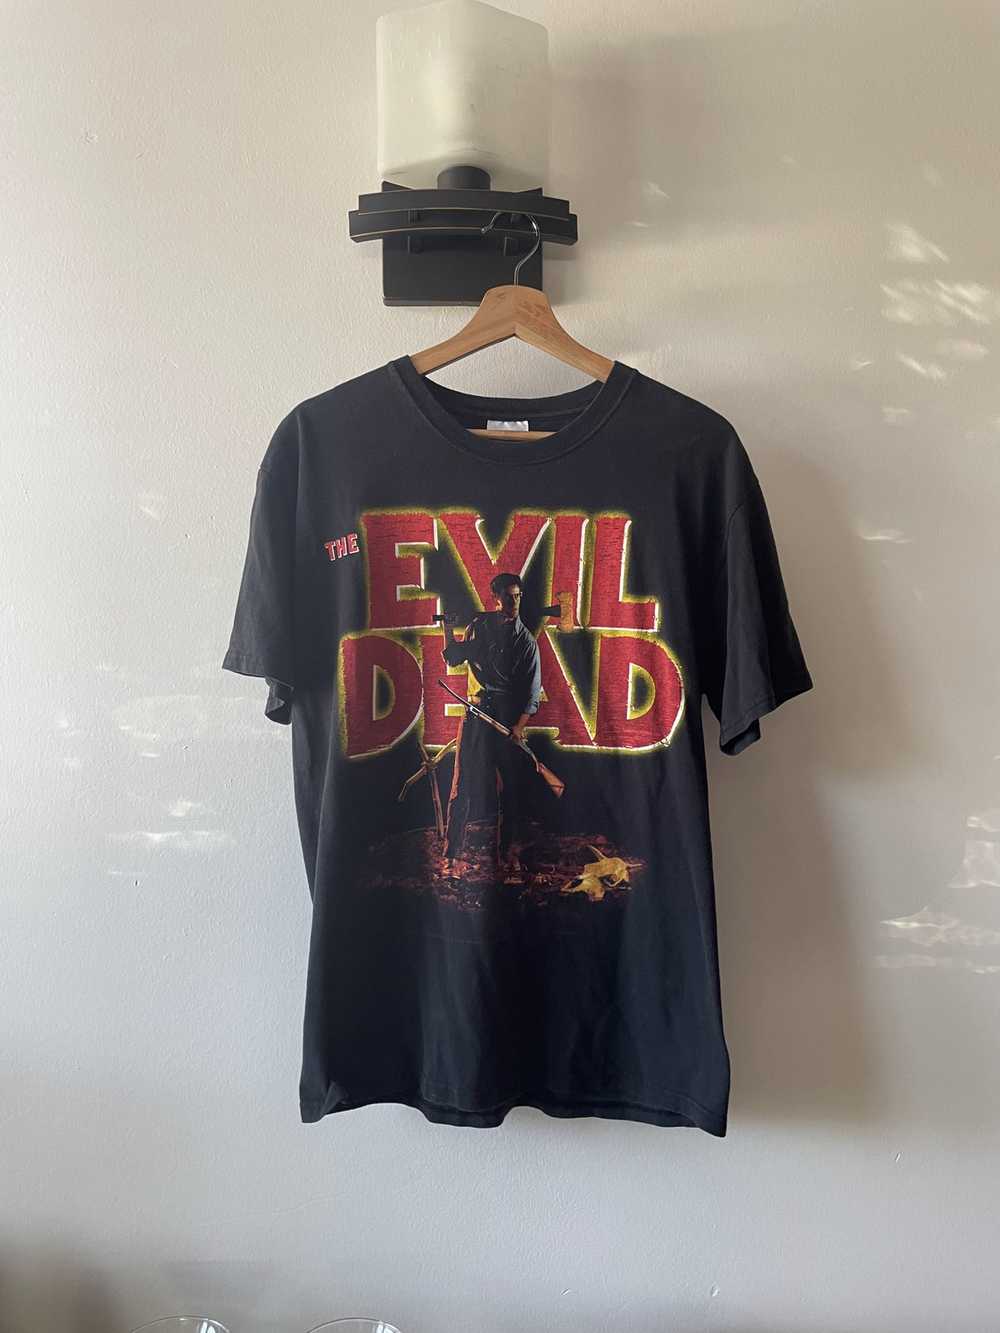 Vintage Vintage 2001 The Evil Dead t-shirt - image 1